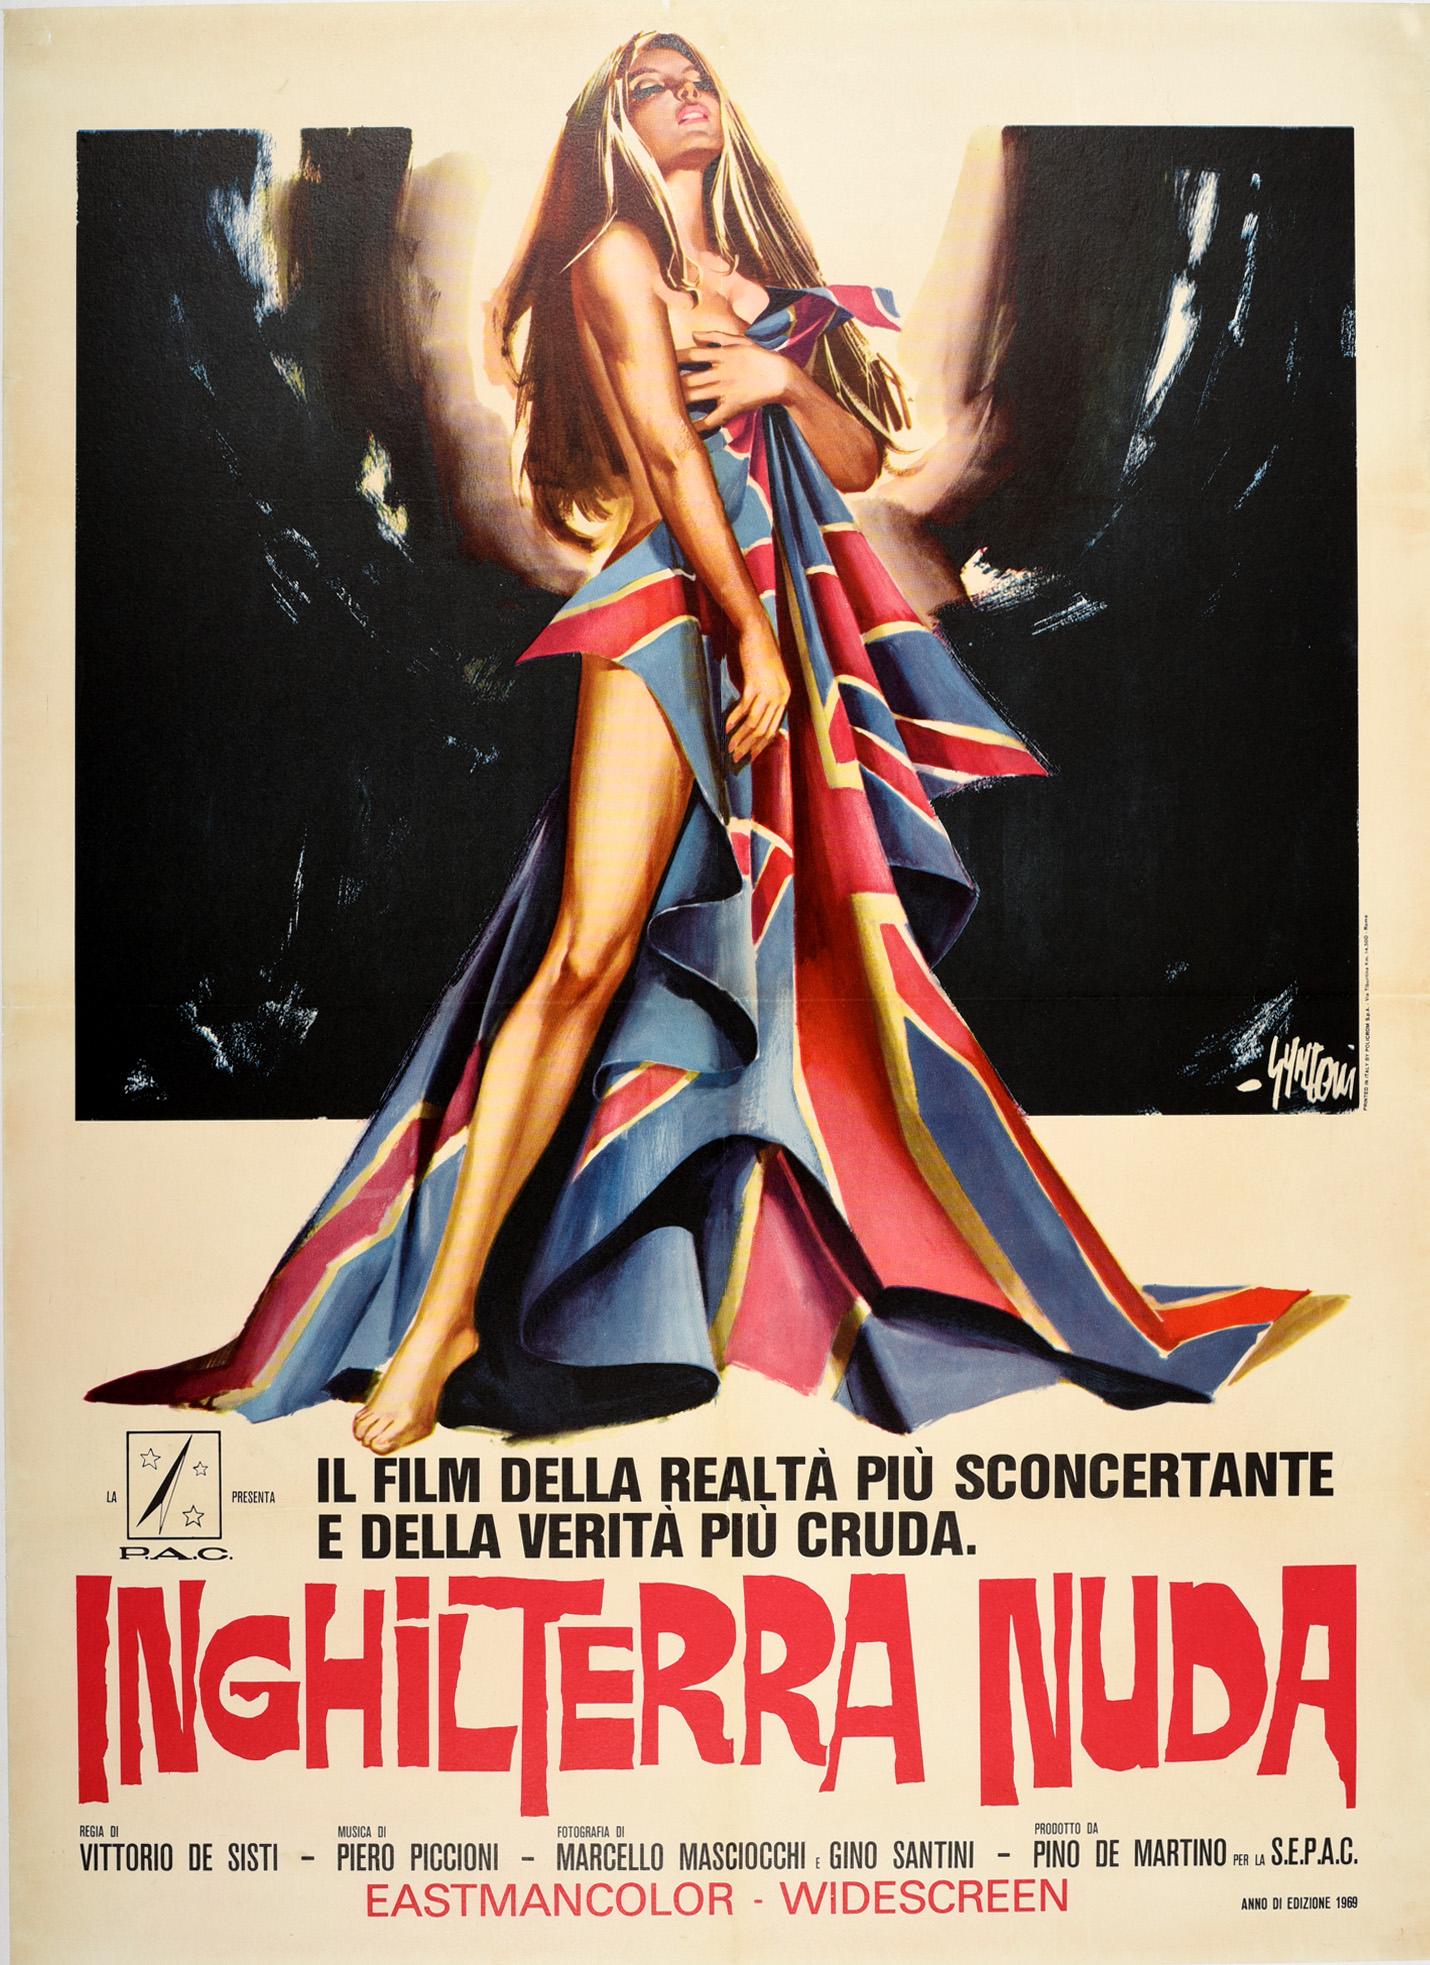 Sandro Symeoni Print - Original Vintage Movie Poster Inghilterra Nuda Naked England Italian Documentary